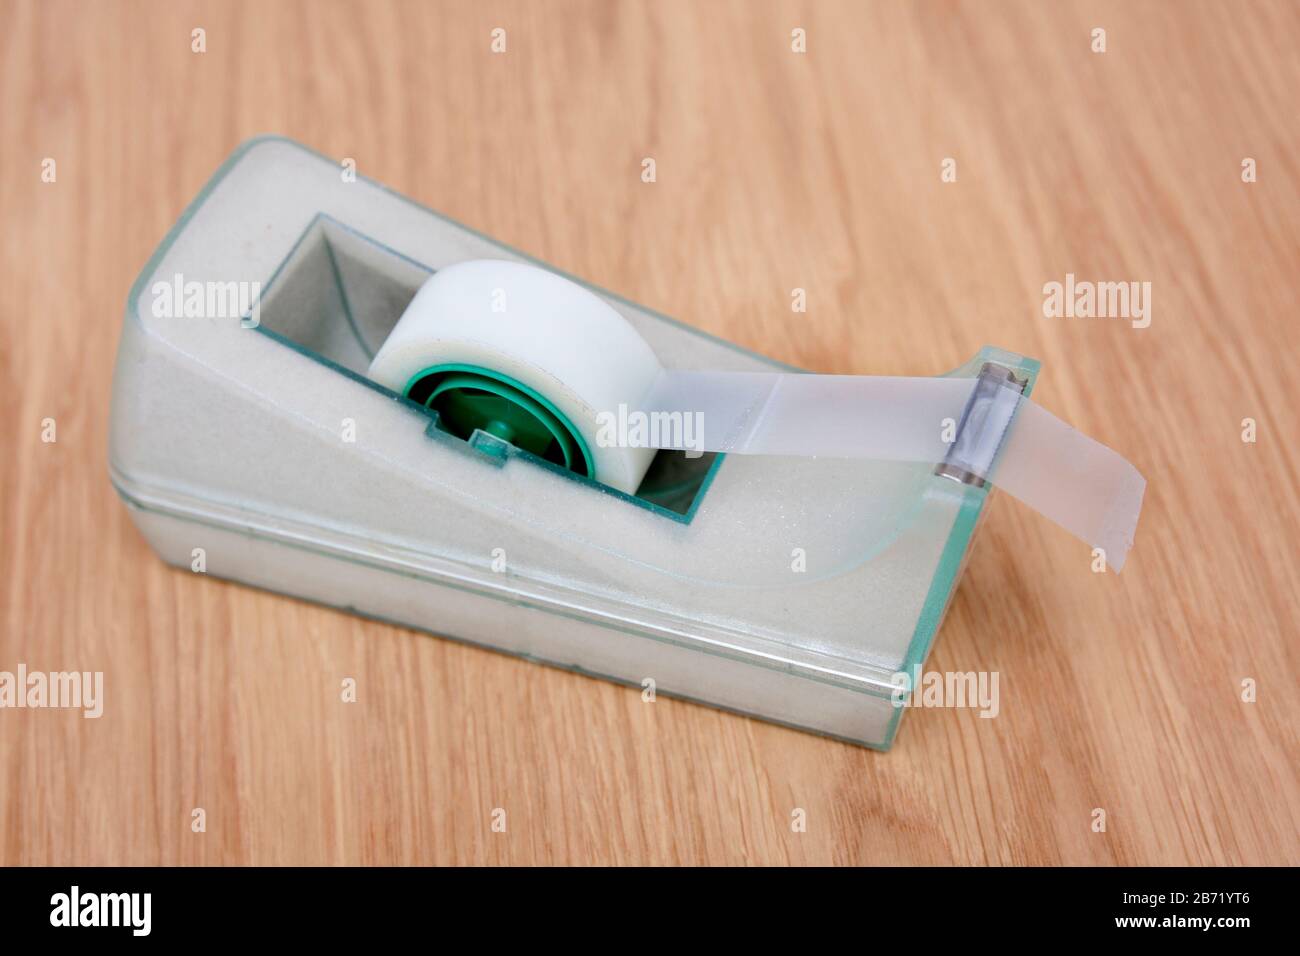 rotolo di nastro adesivo sul dispenser Foto Stock